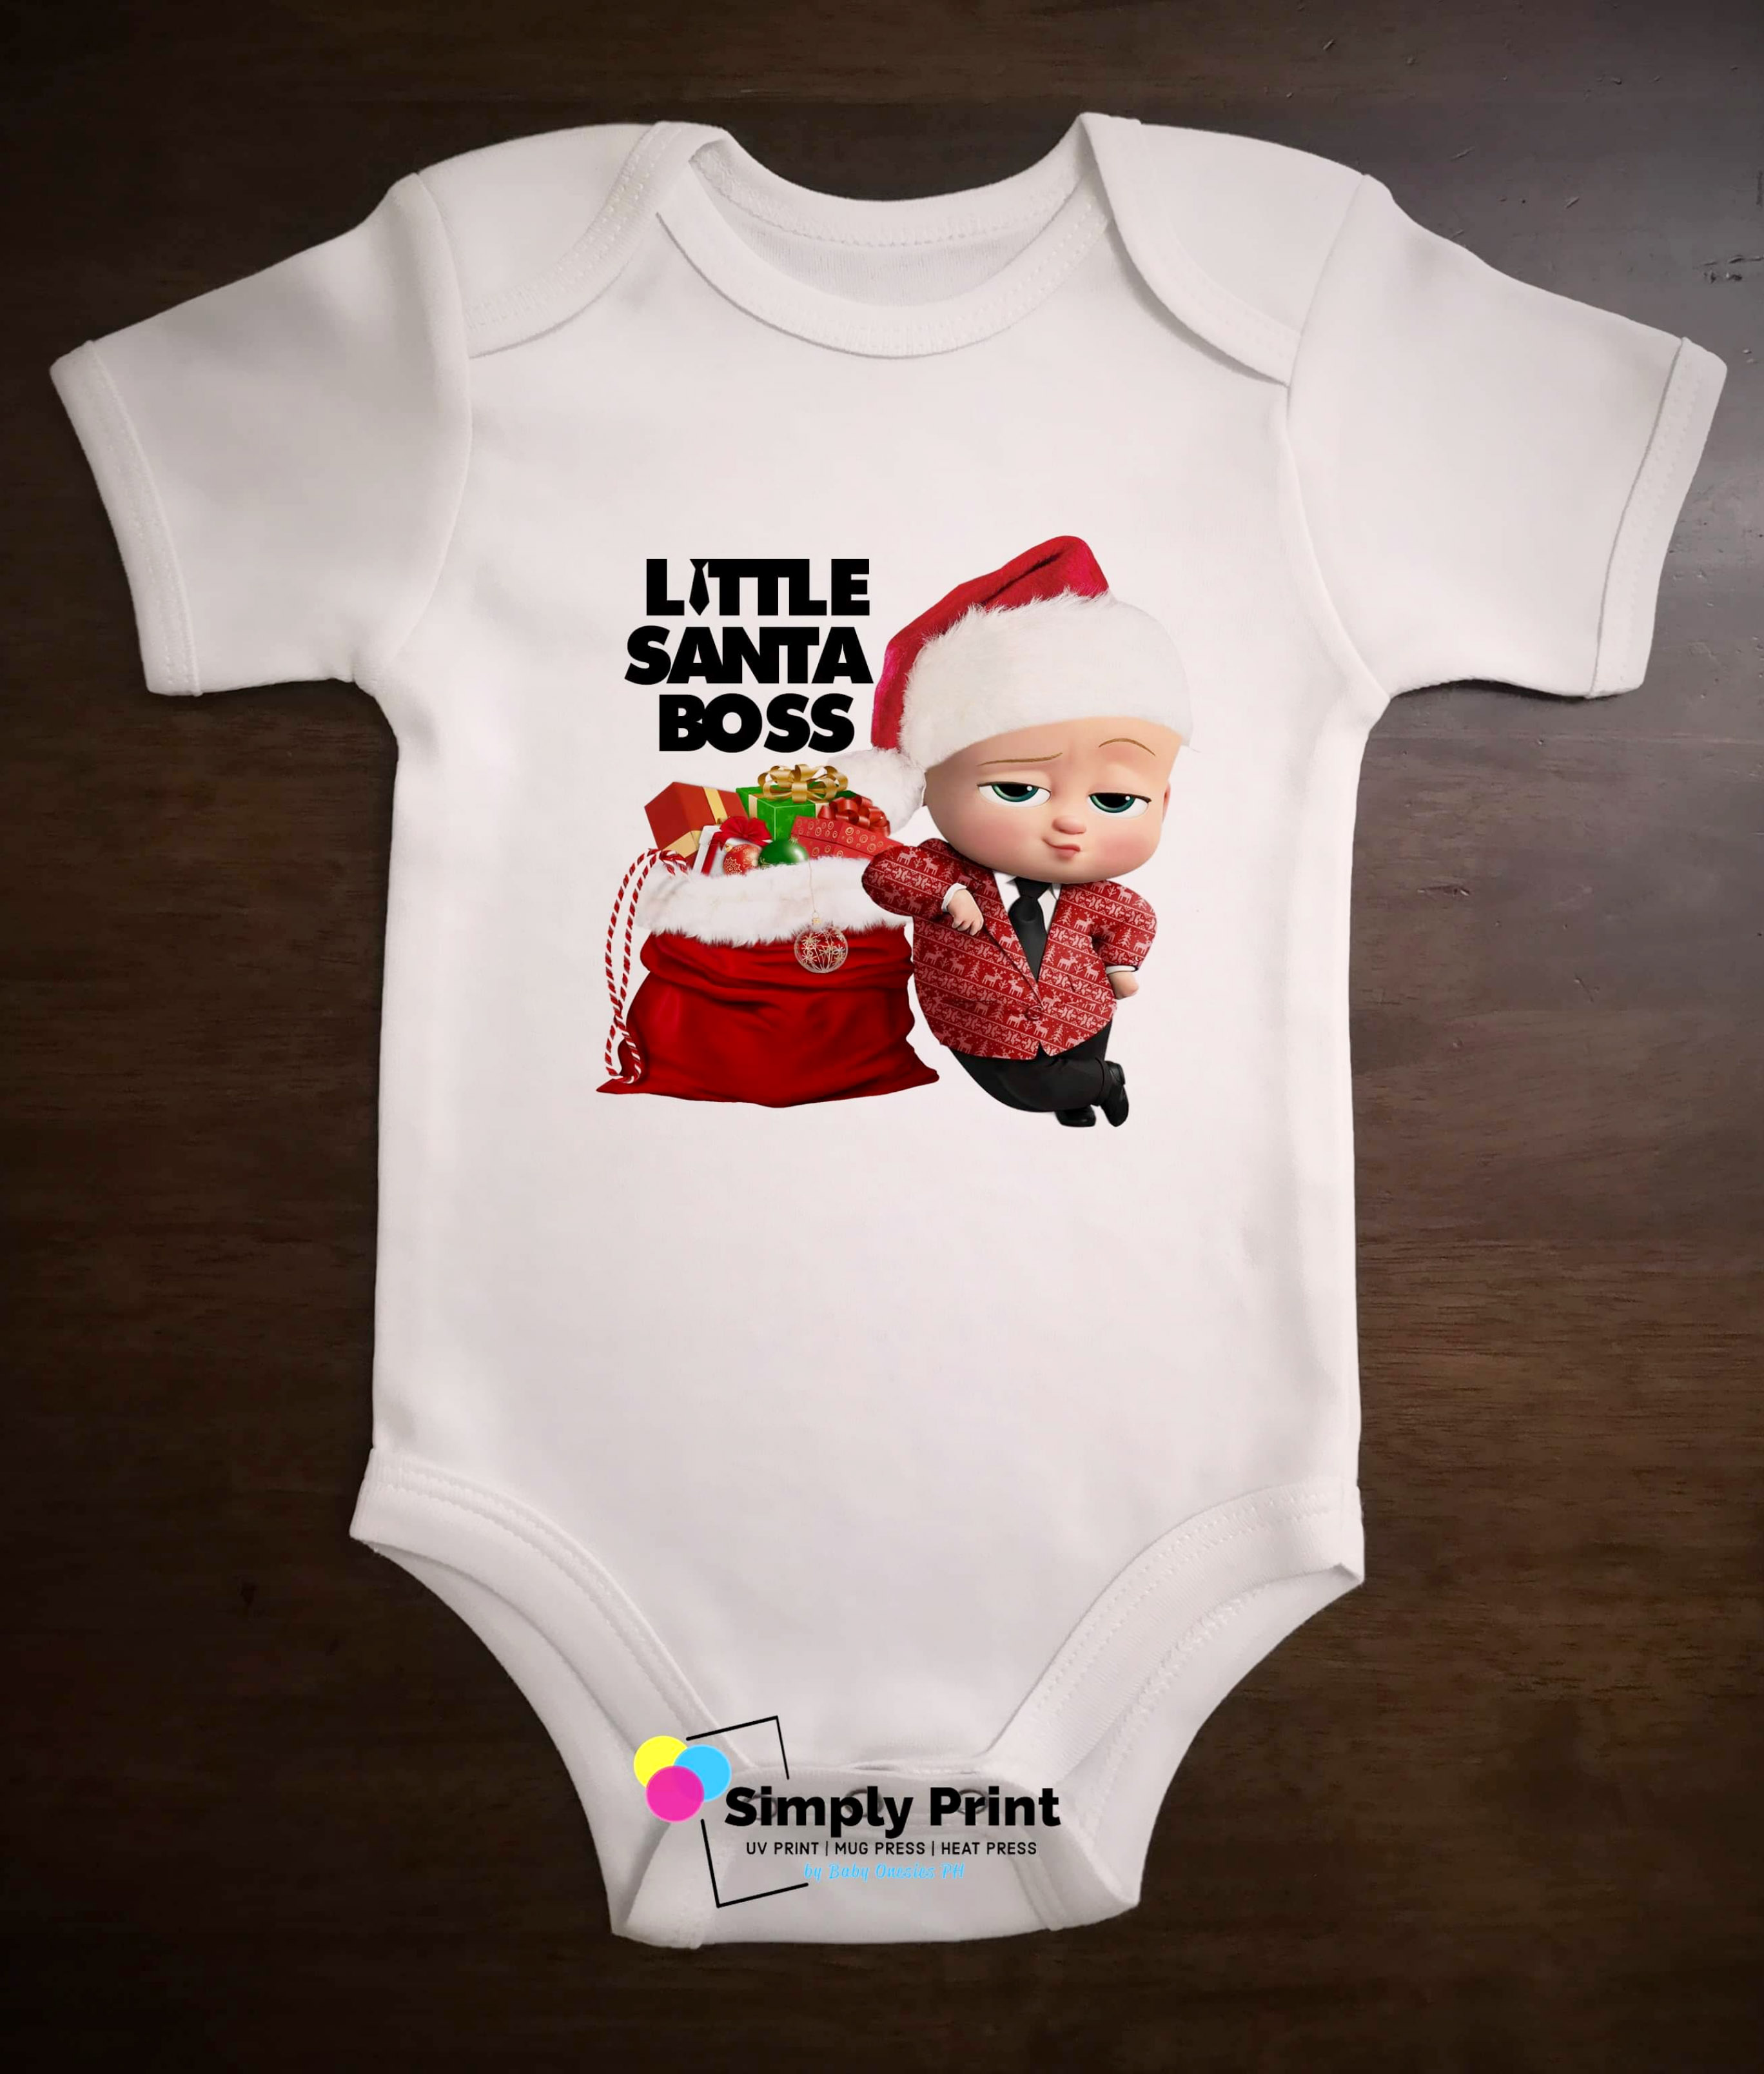 baby boss sale